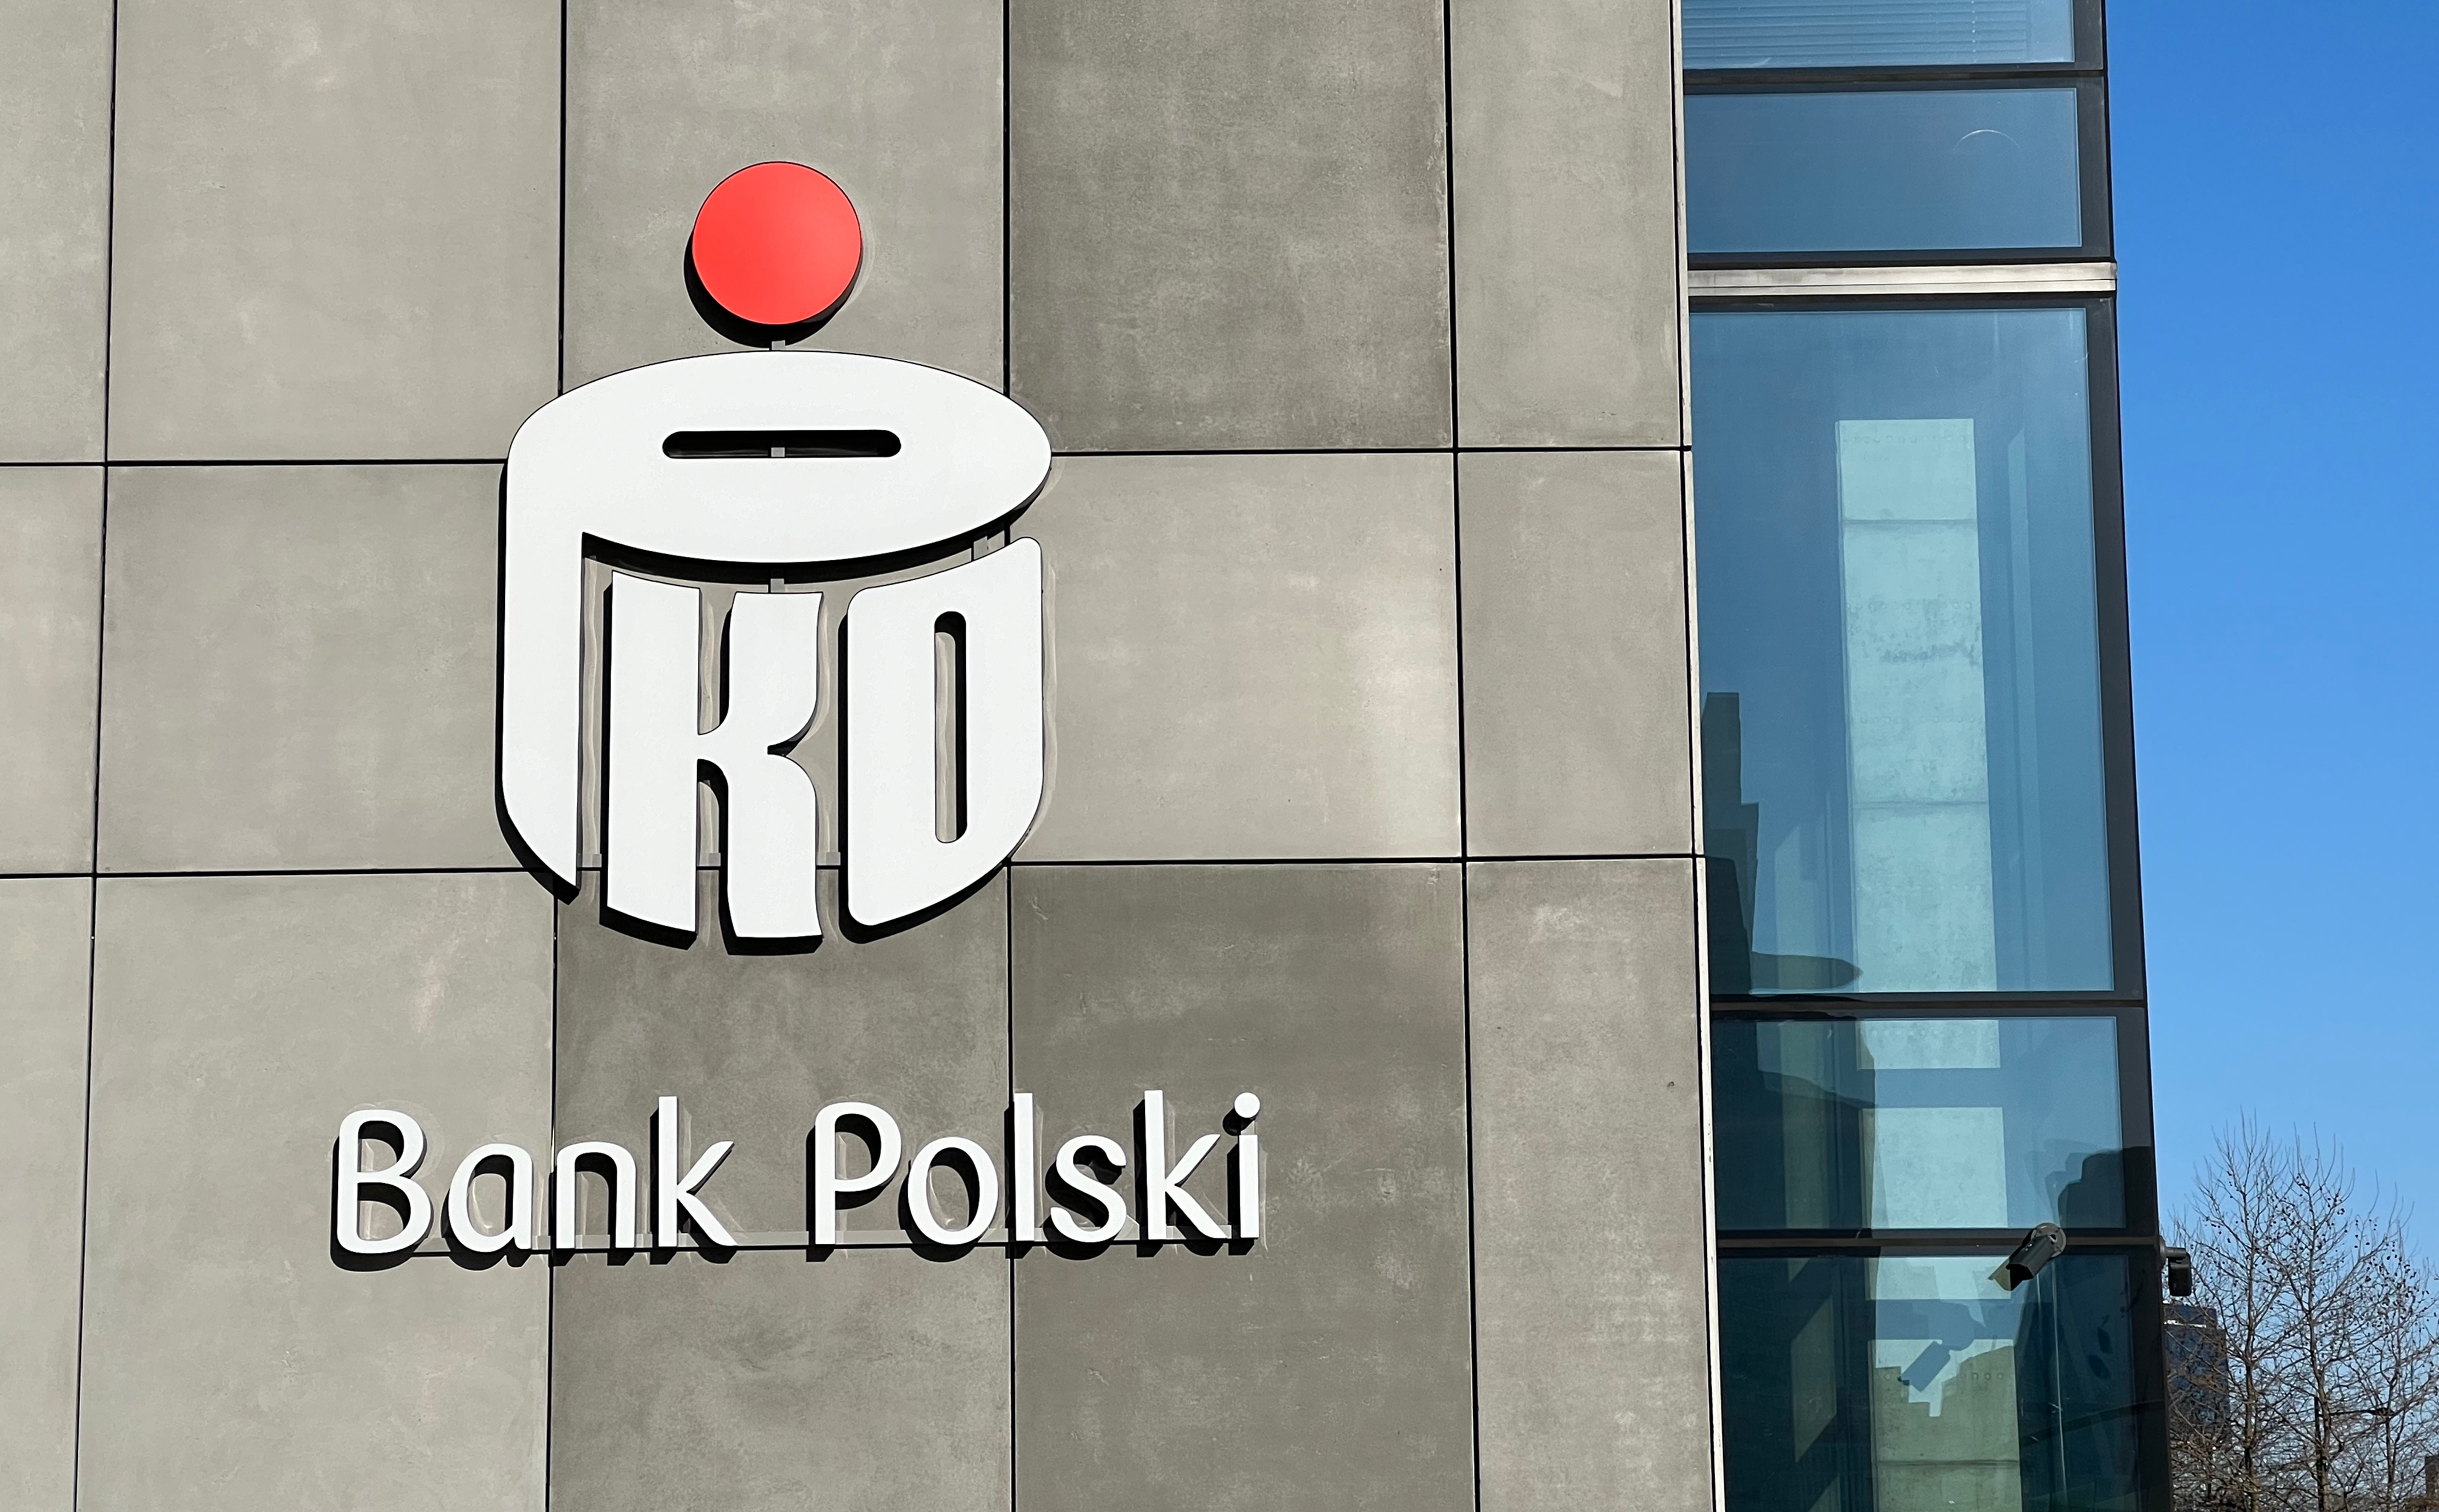 Zmiany w zarządzie największego polskiego banku. Nowy wiceprezes PKO